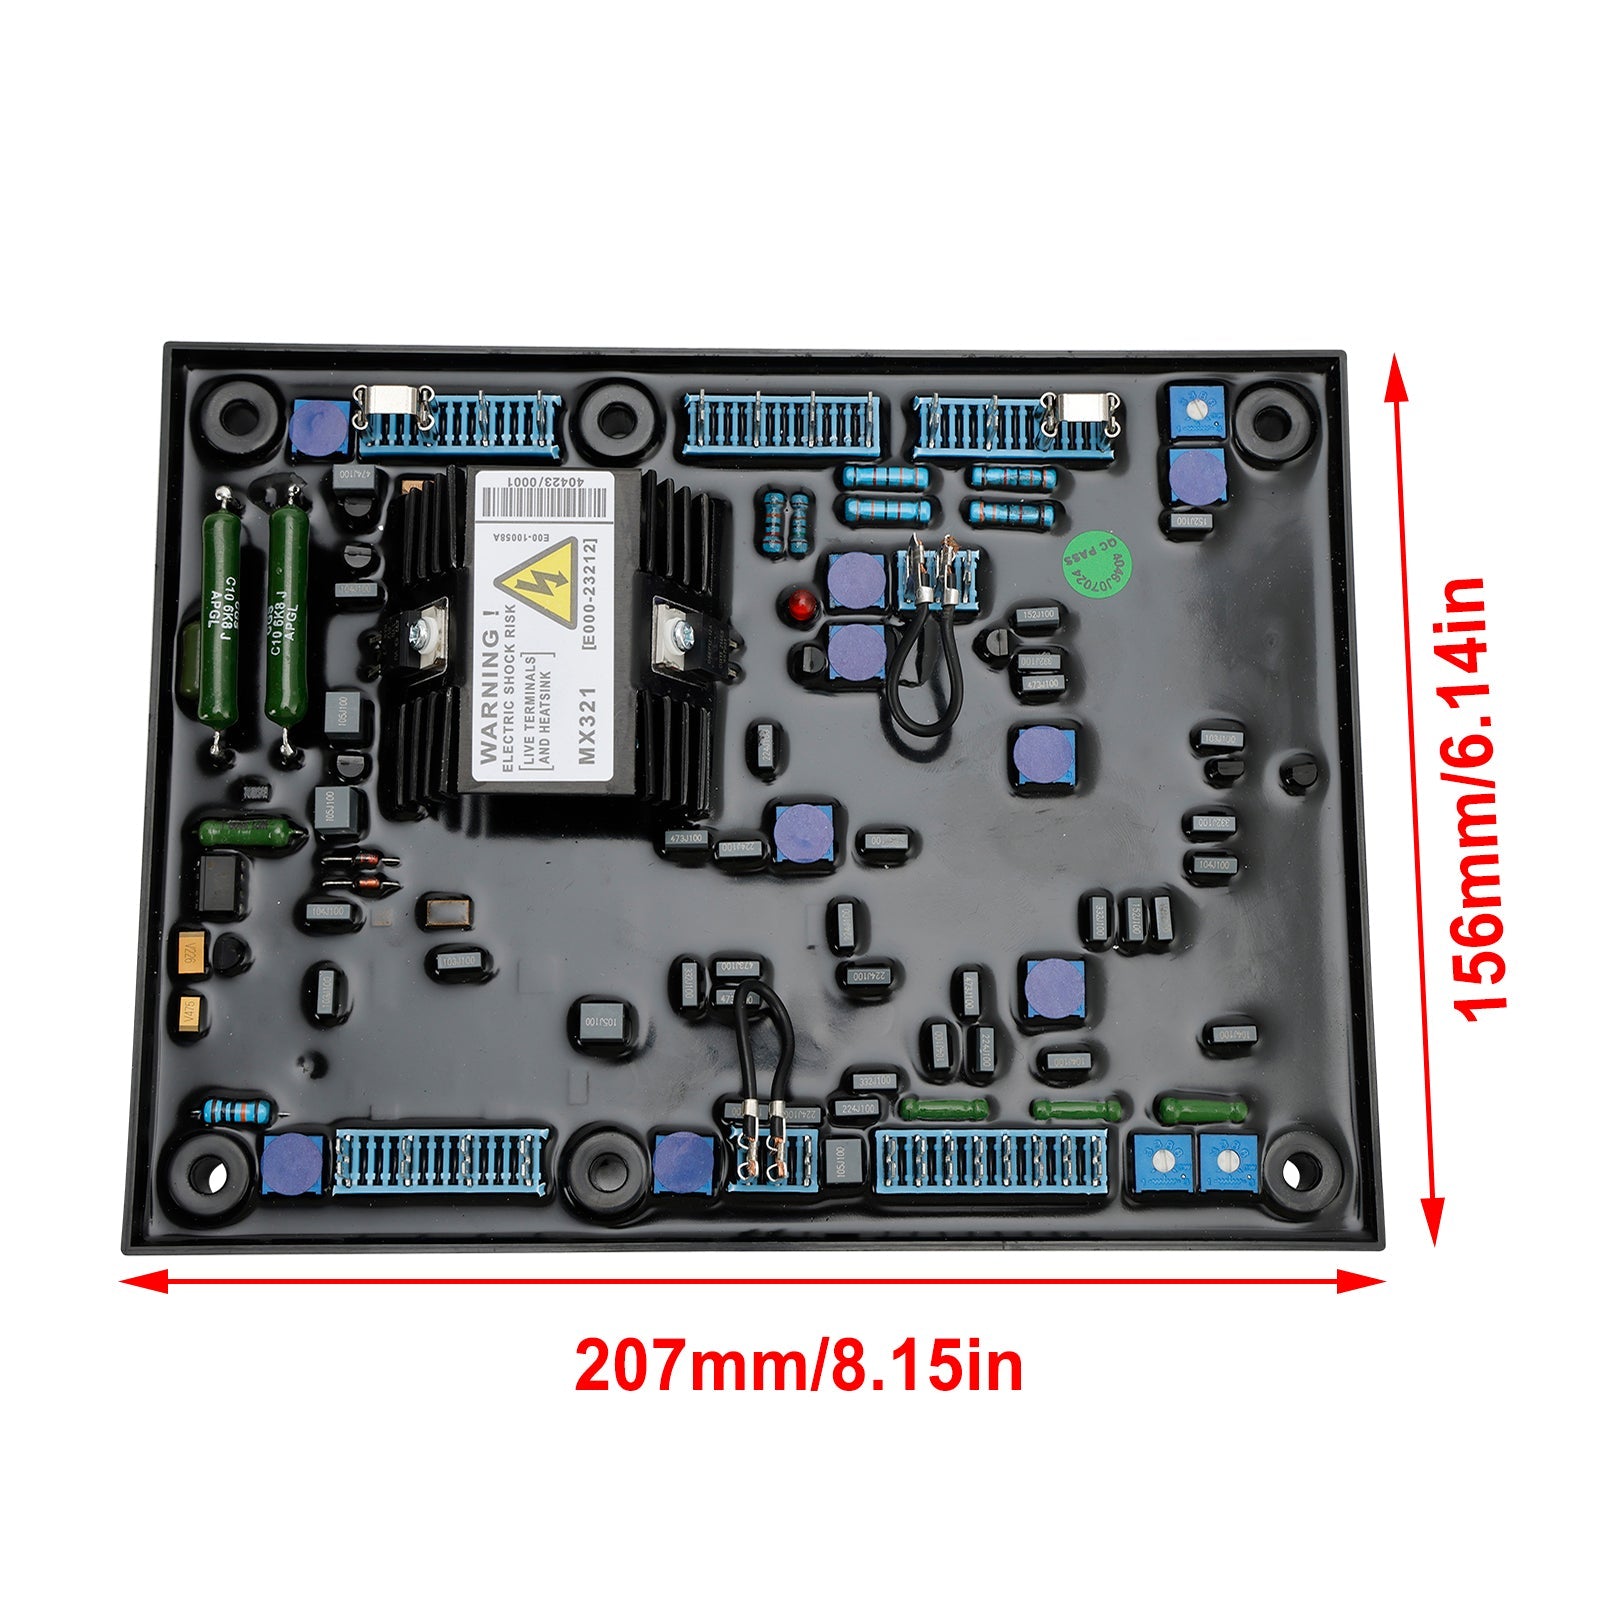 Remplacement automatique du régulateur de tension AVR MX321 pour générateur